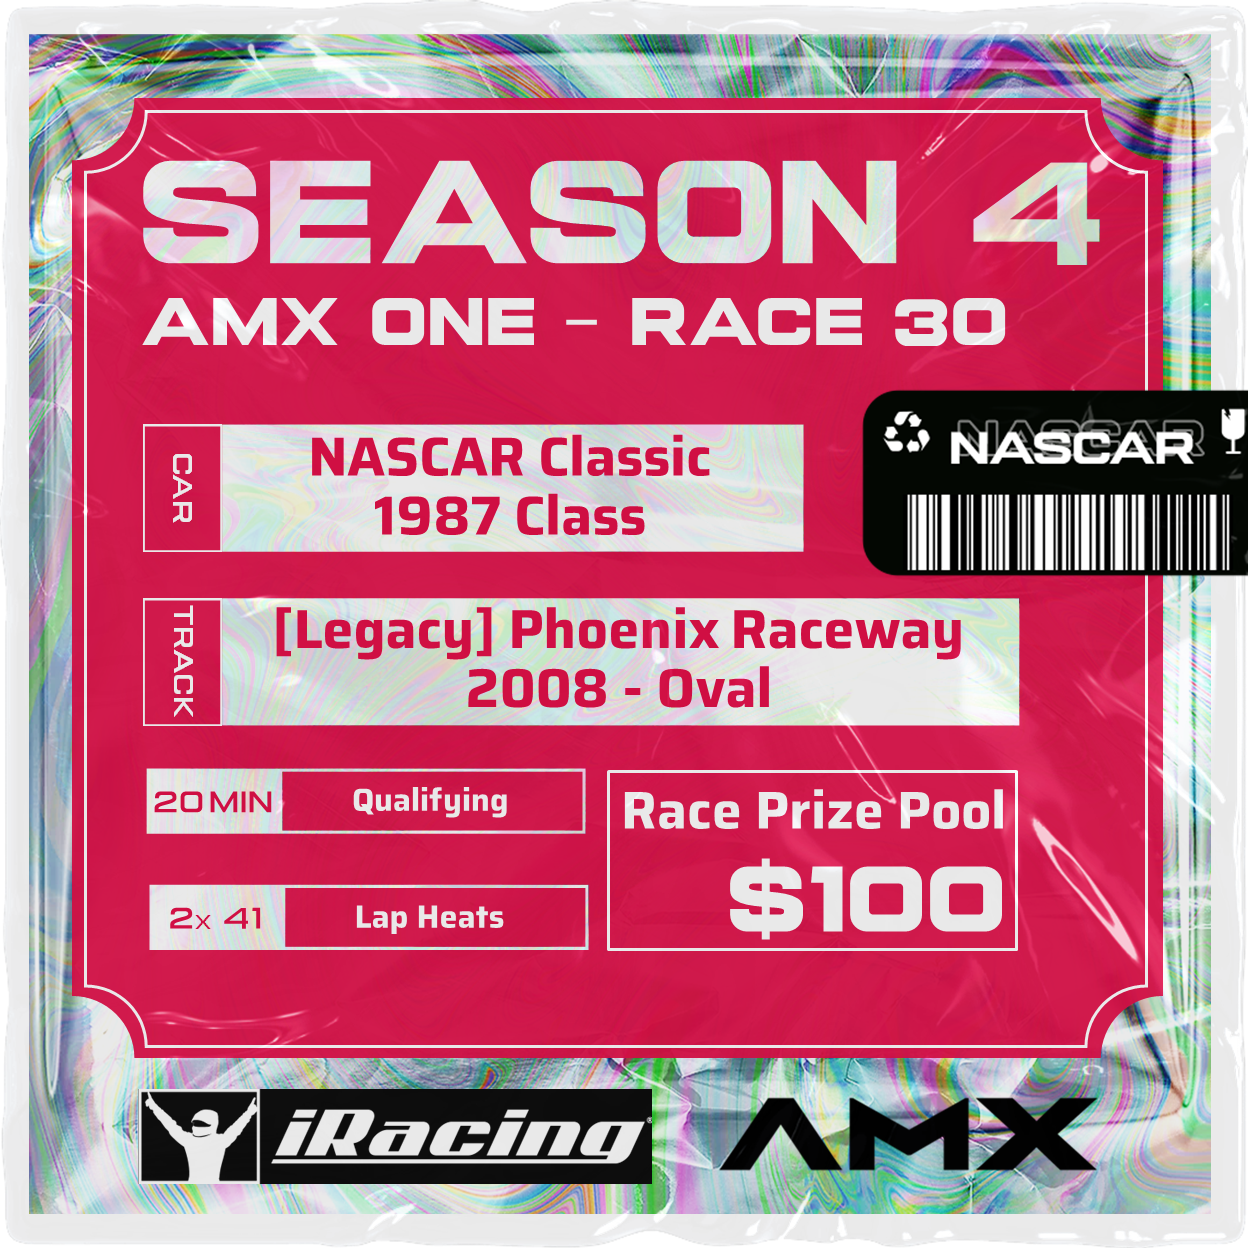 AMX ONE - RACE 30 [4/13 - 5:50 PM GMT]